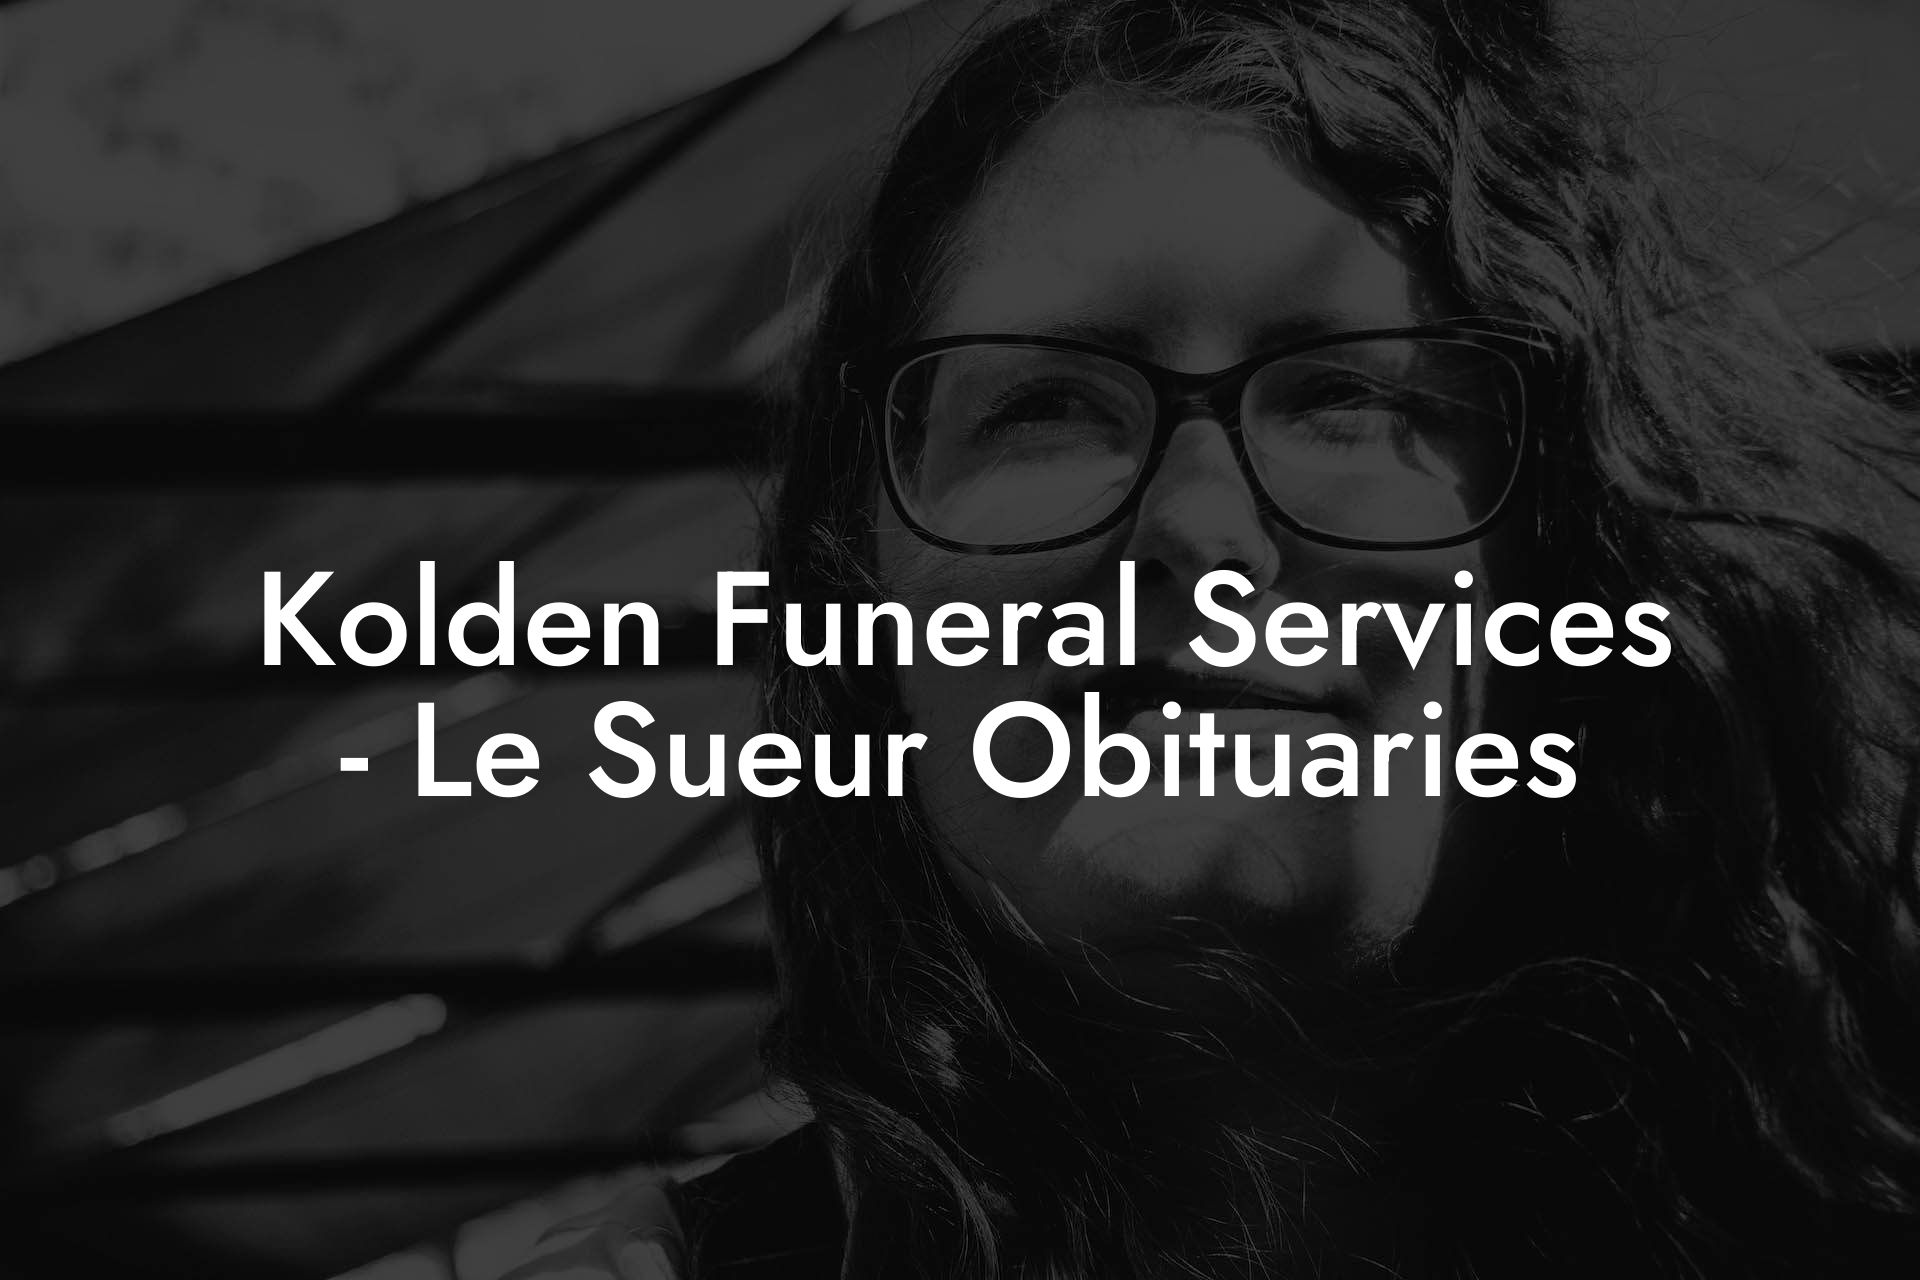 Kolden Funeral Services - Le Sueur Obituaries